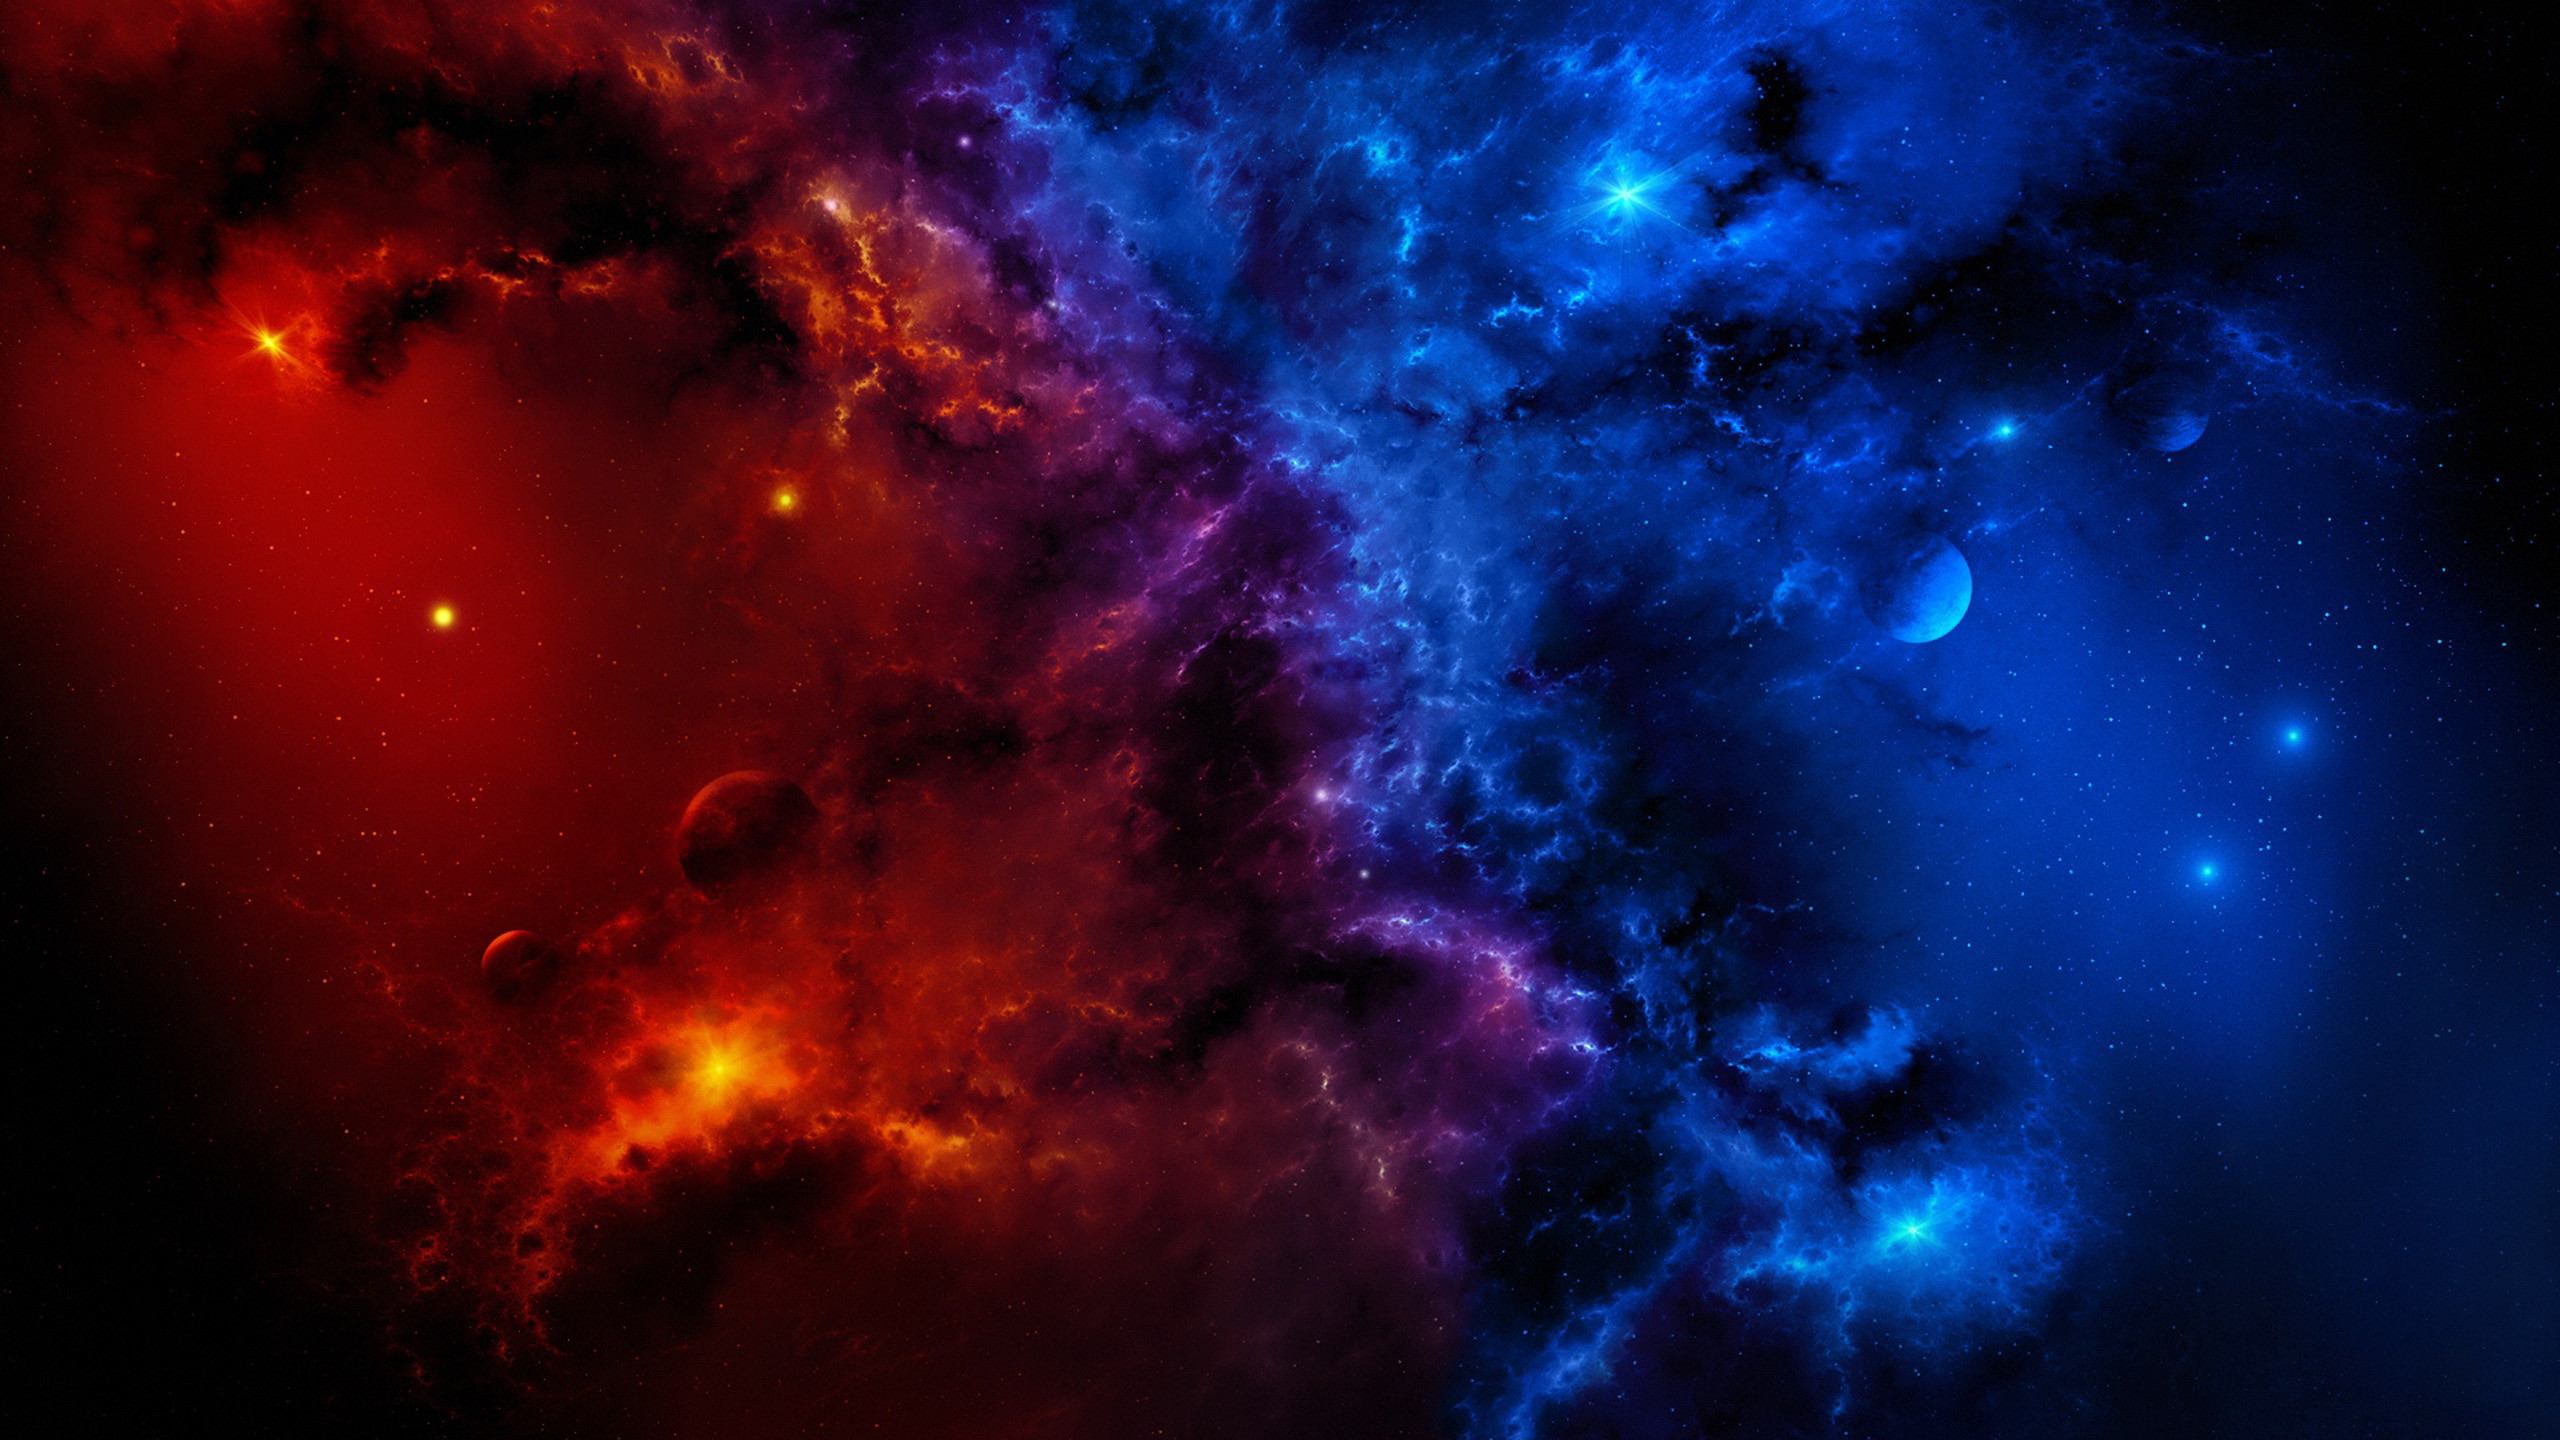 Ultra Hd Deep Space 1920ã1200 - Red And Blue Galaxy - HD Wallpaper 